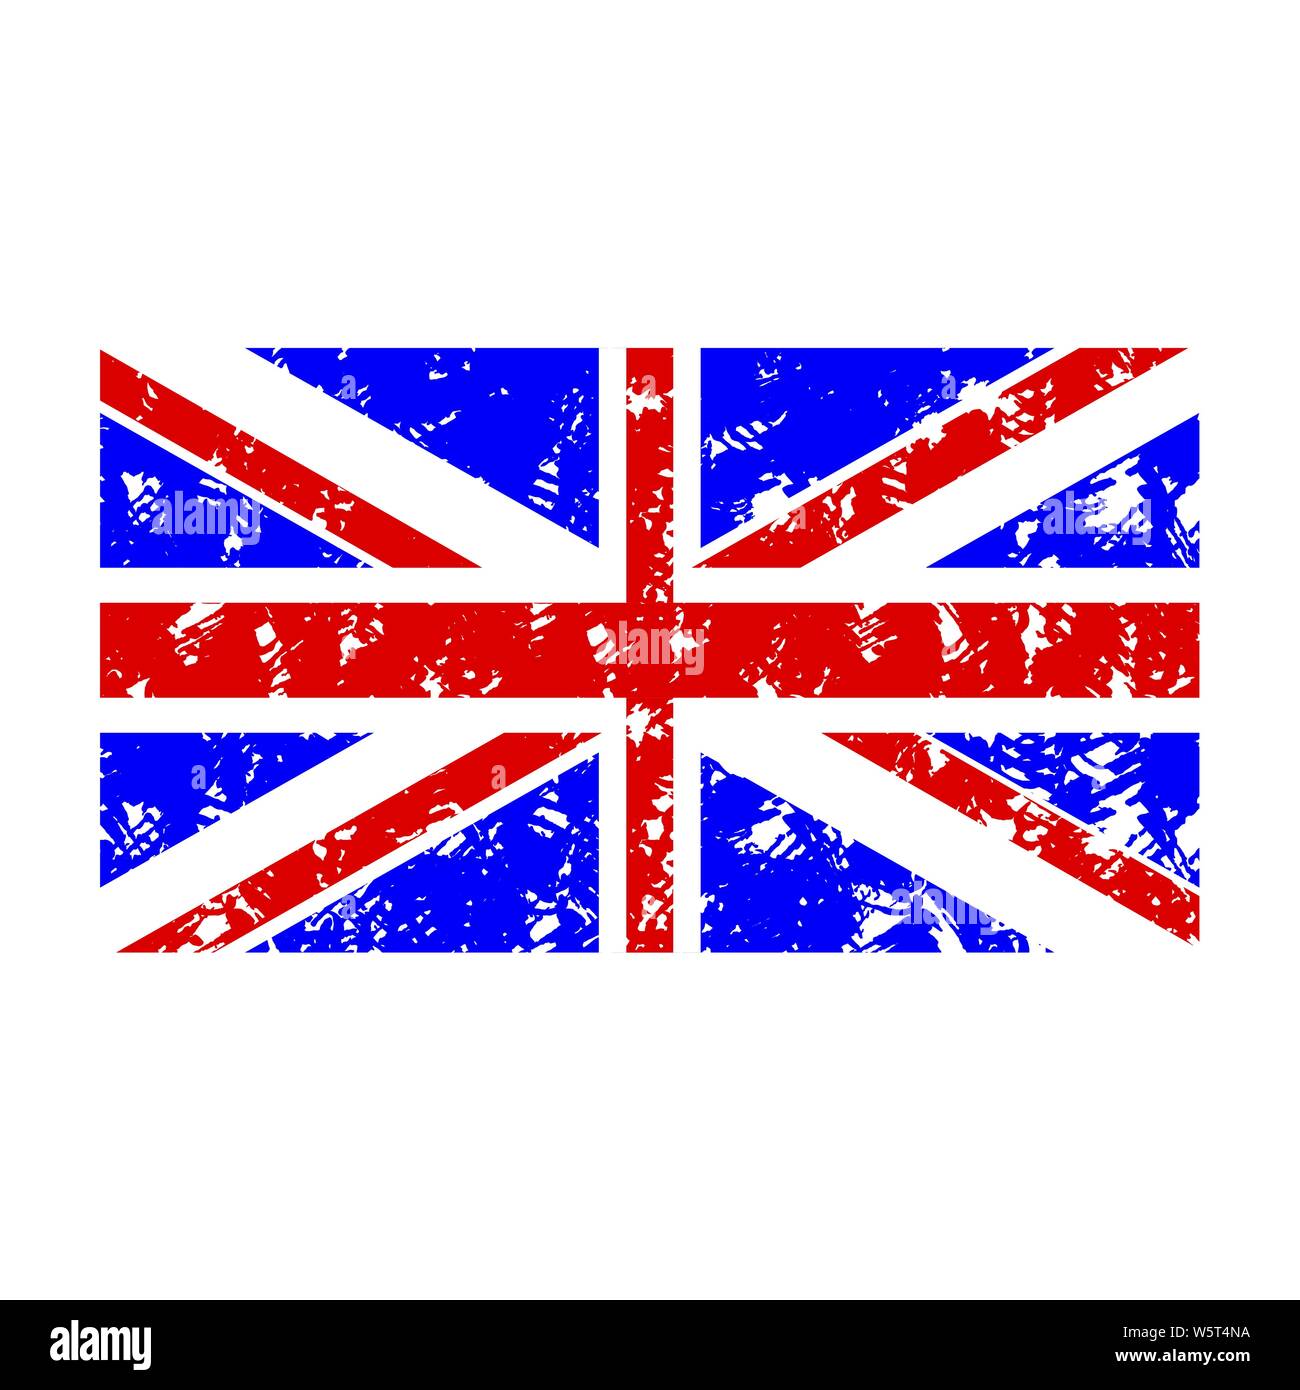 Rubber stamp flag united kingdom. Flag country uk, national emblem seal stamp, vector illustration Stock Vector